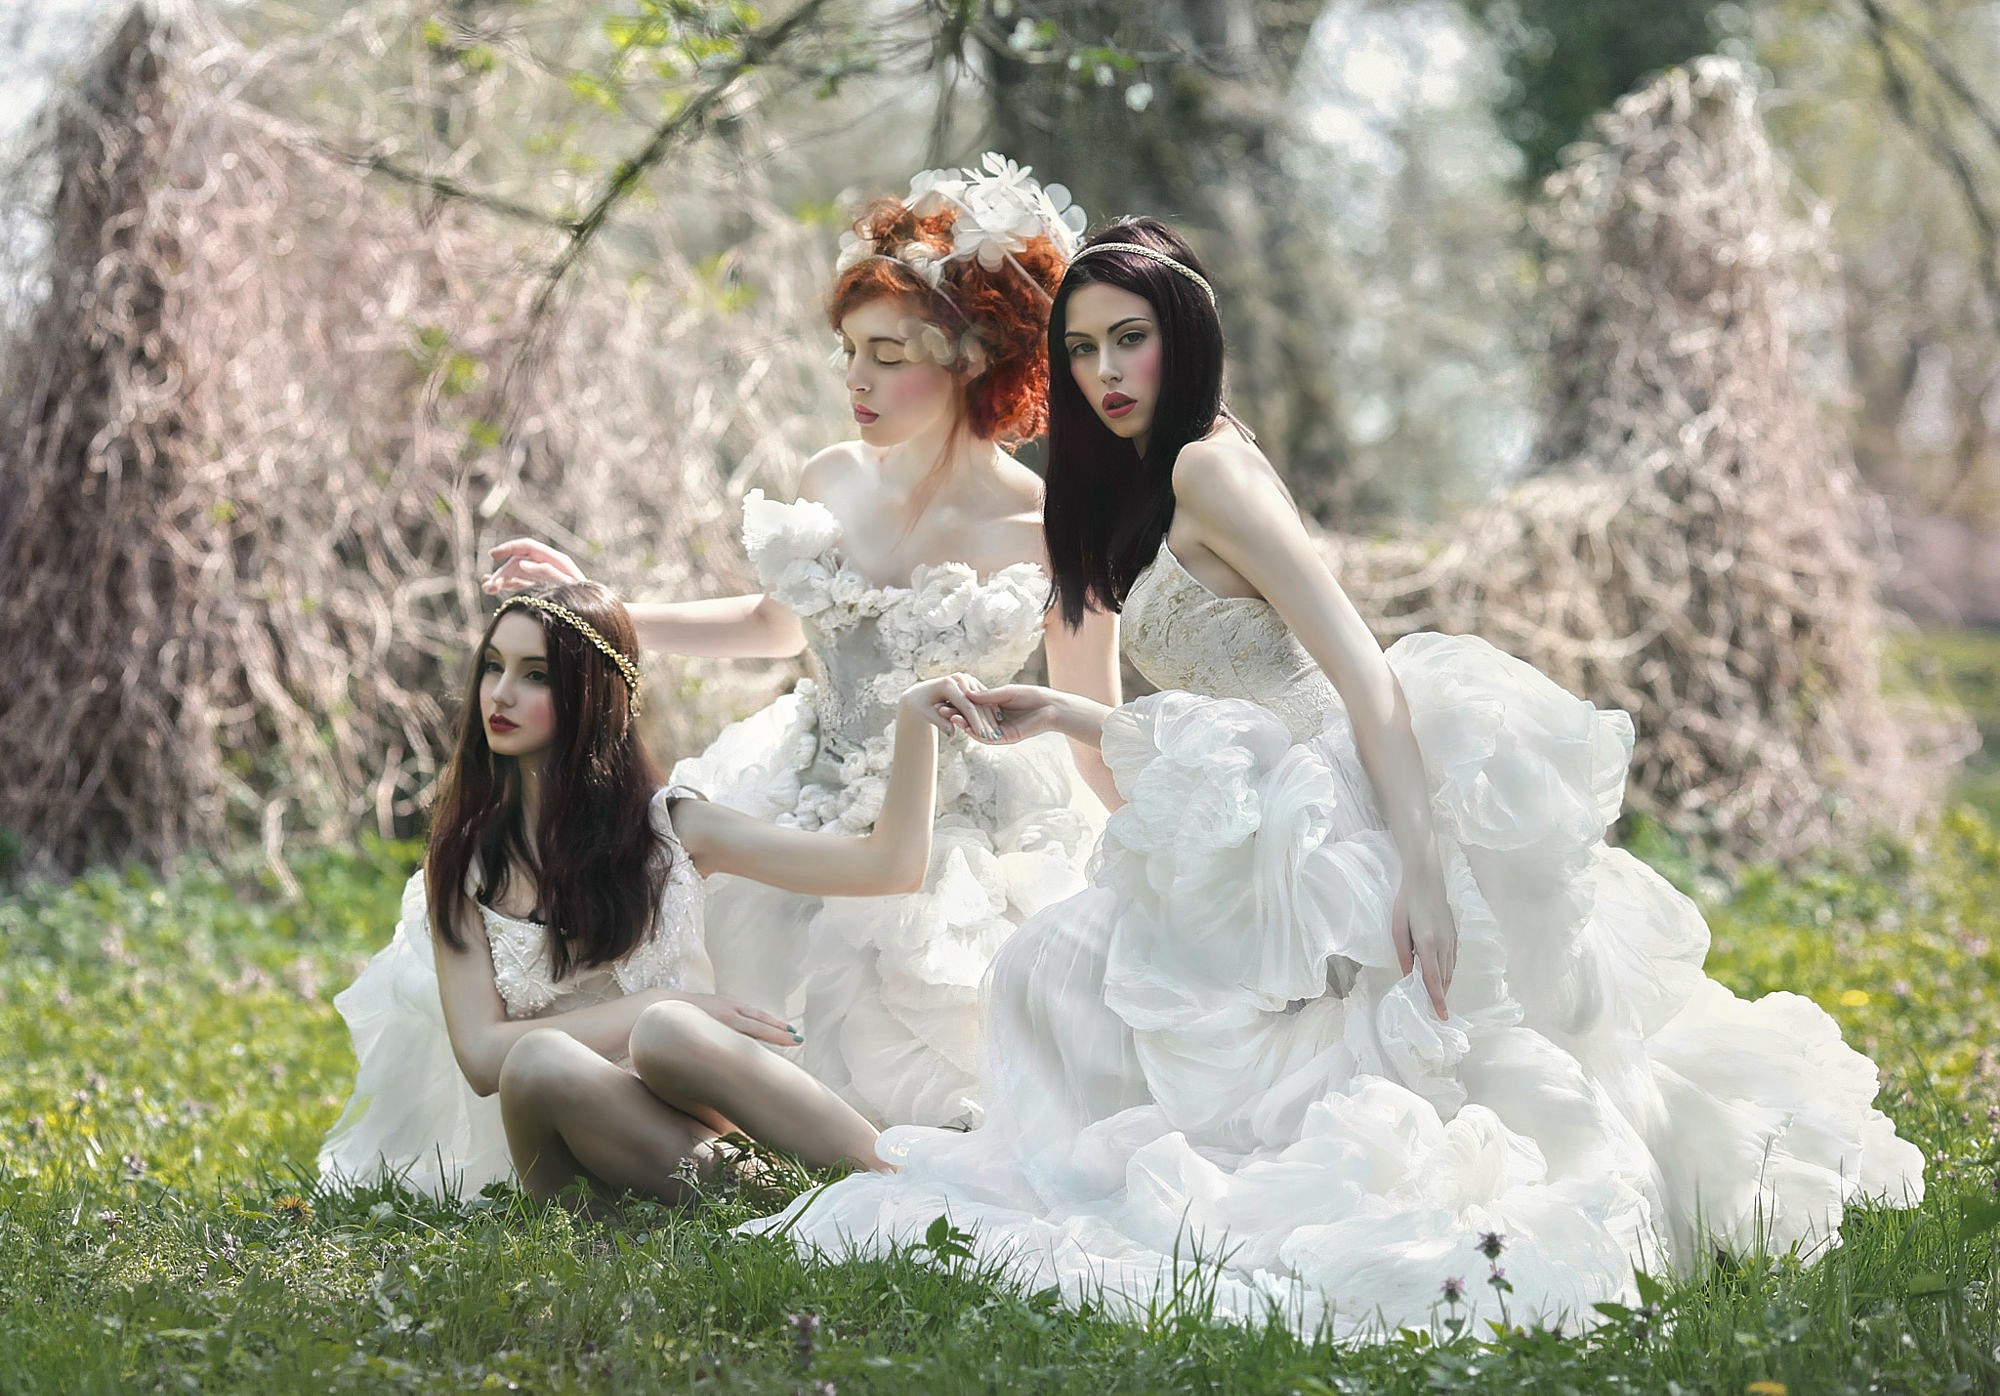 Раз два три белом платье. Две девушки в белых платьях. Фотосессия 3 девушки. Девушка в белом платье. Три девушки в белом платье.